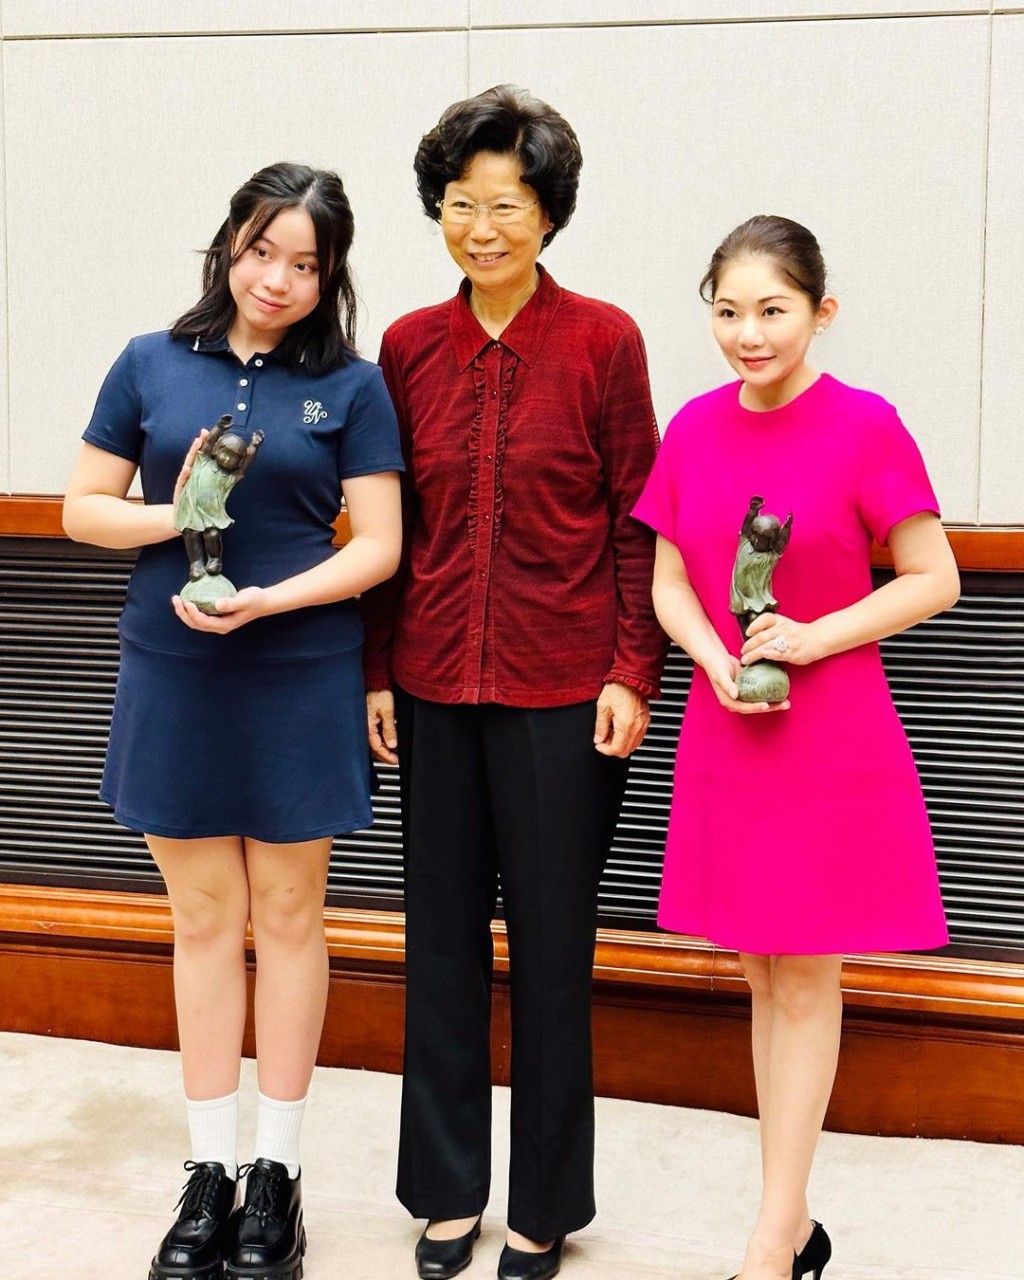 劉秀樺代表接受春蕾女童銅像。